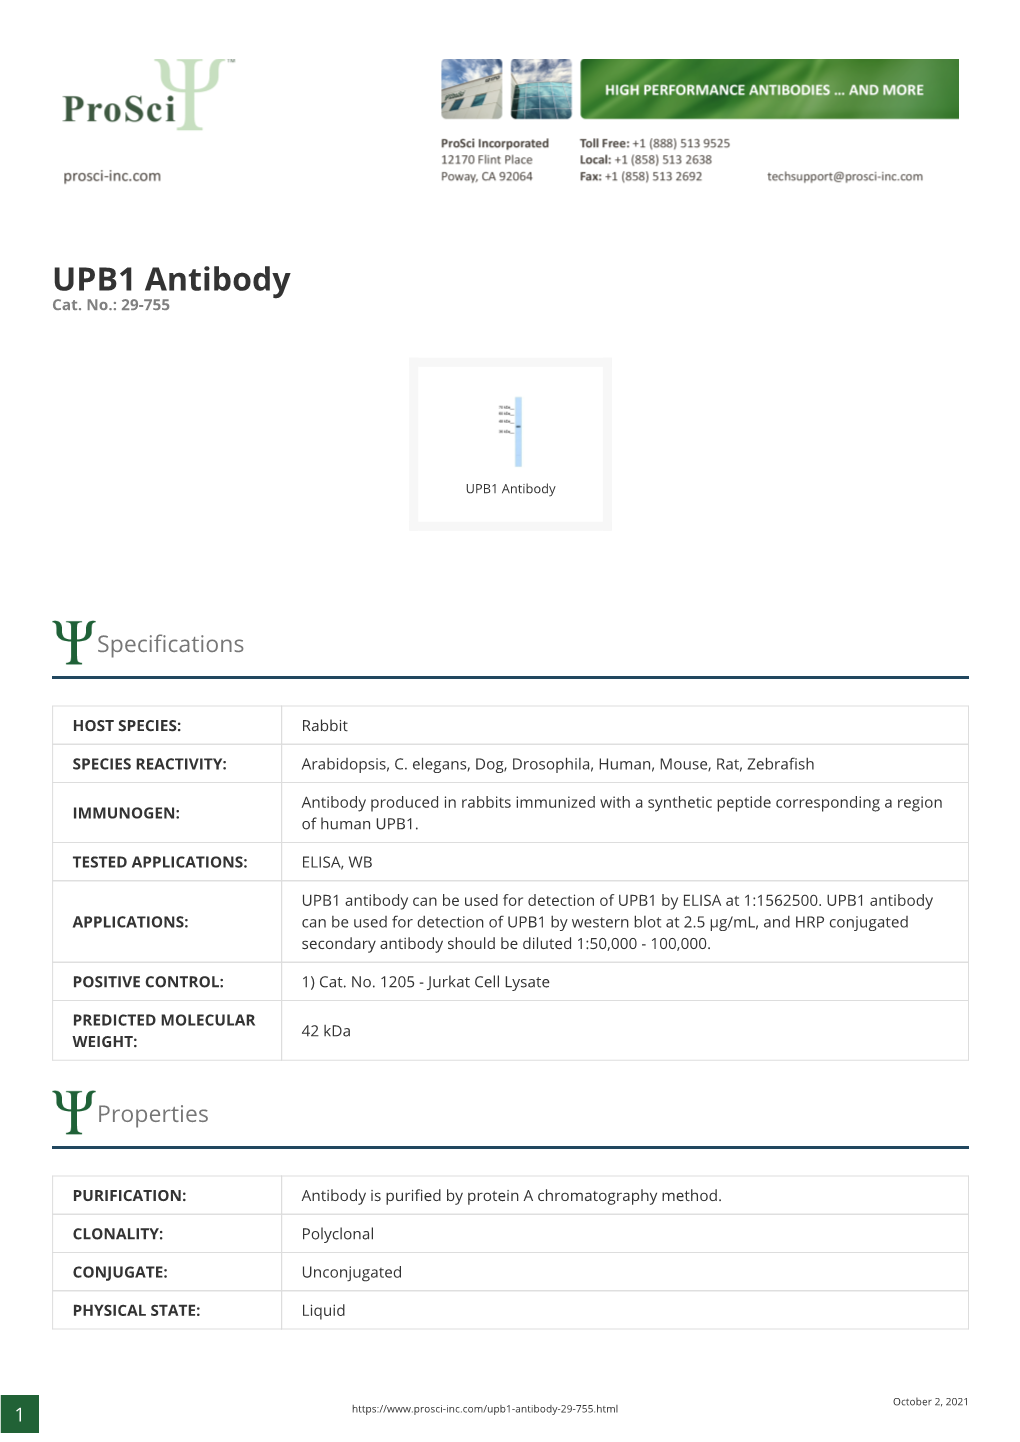 UPB1 Antibody Cat